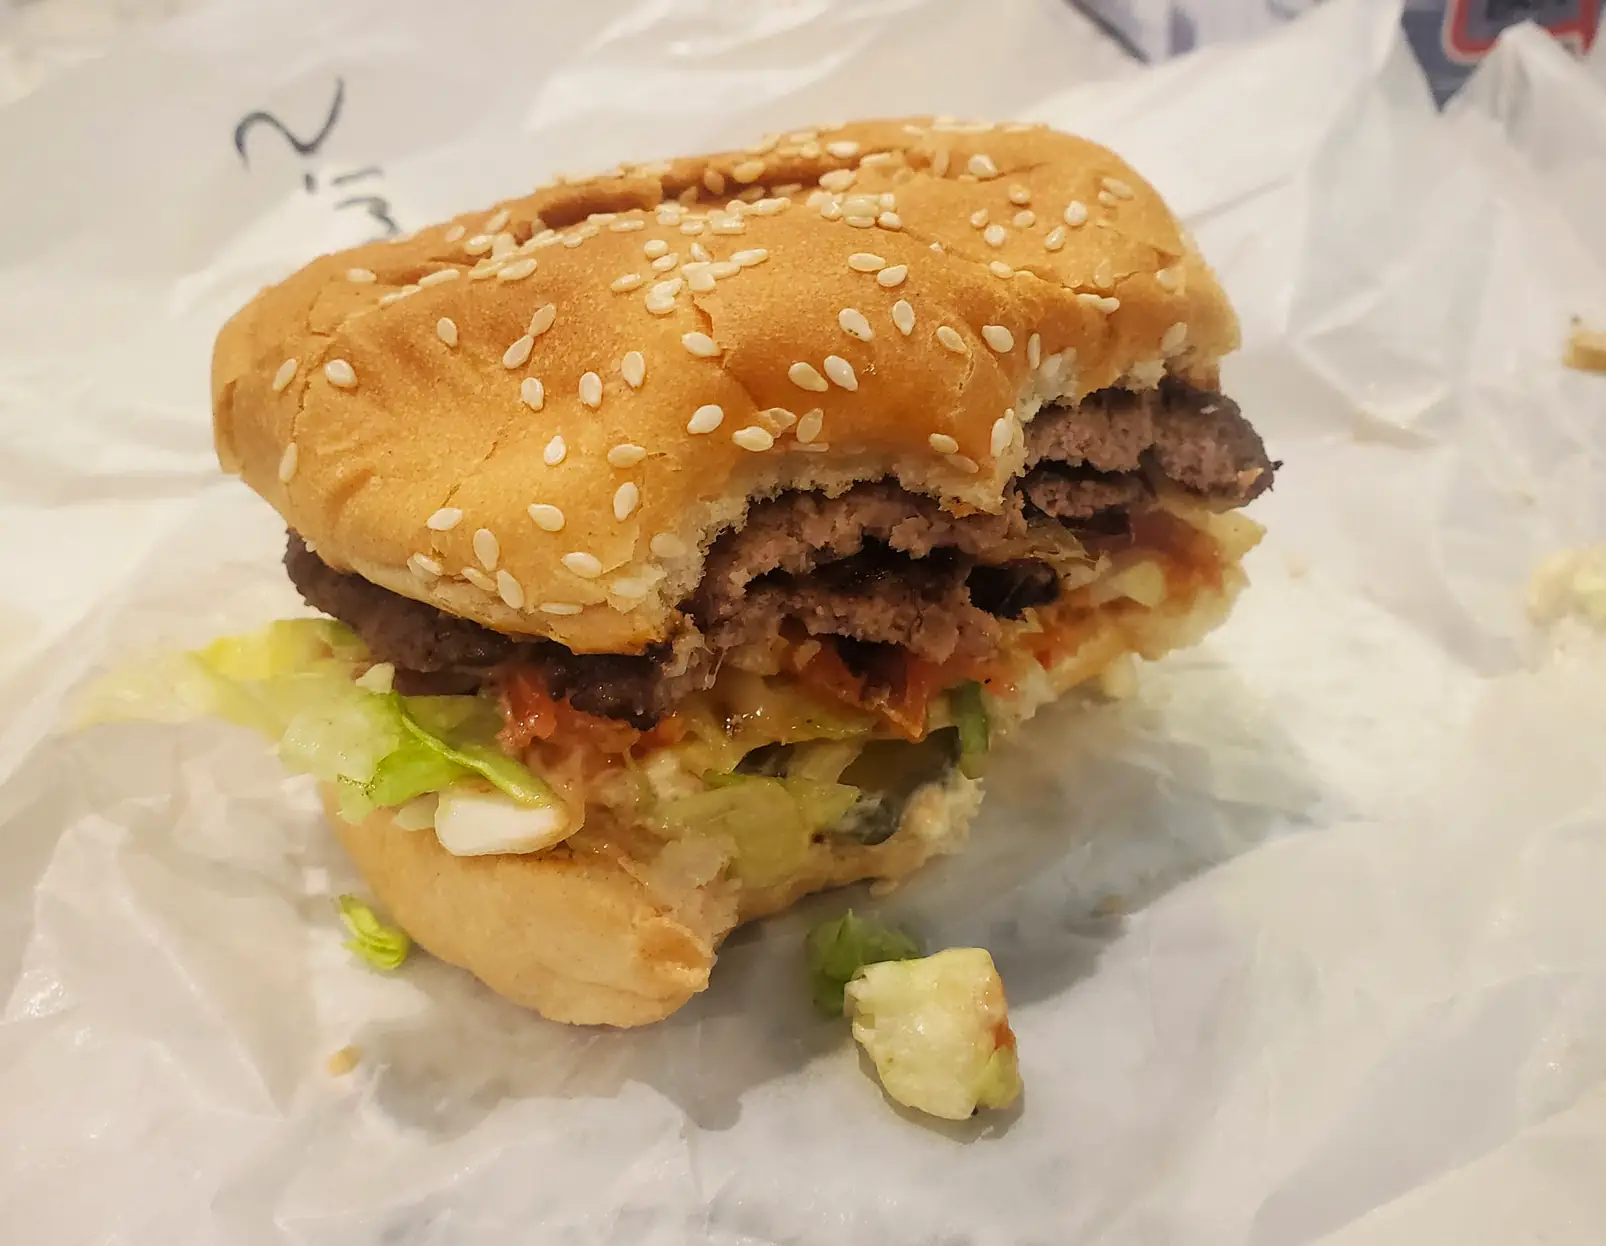 a half-eaten burger from Fritz's